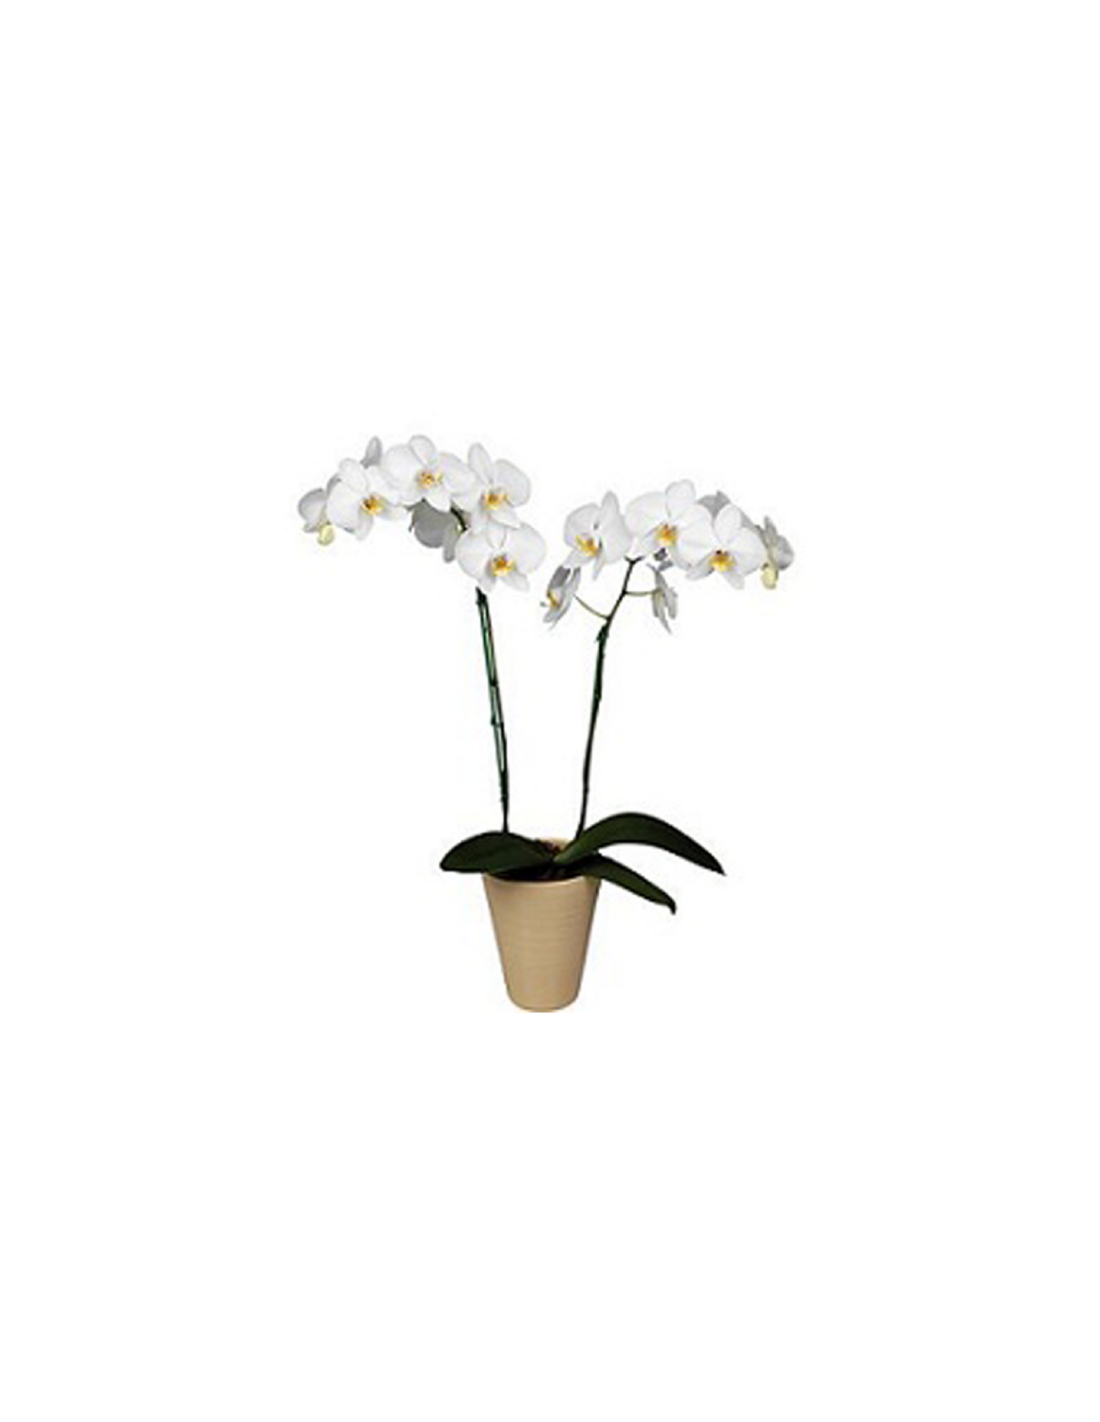 Comprar Orquídea Phalenopsis para regalo a domicilio. Envío gratis 24h